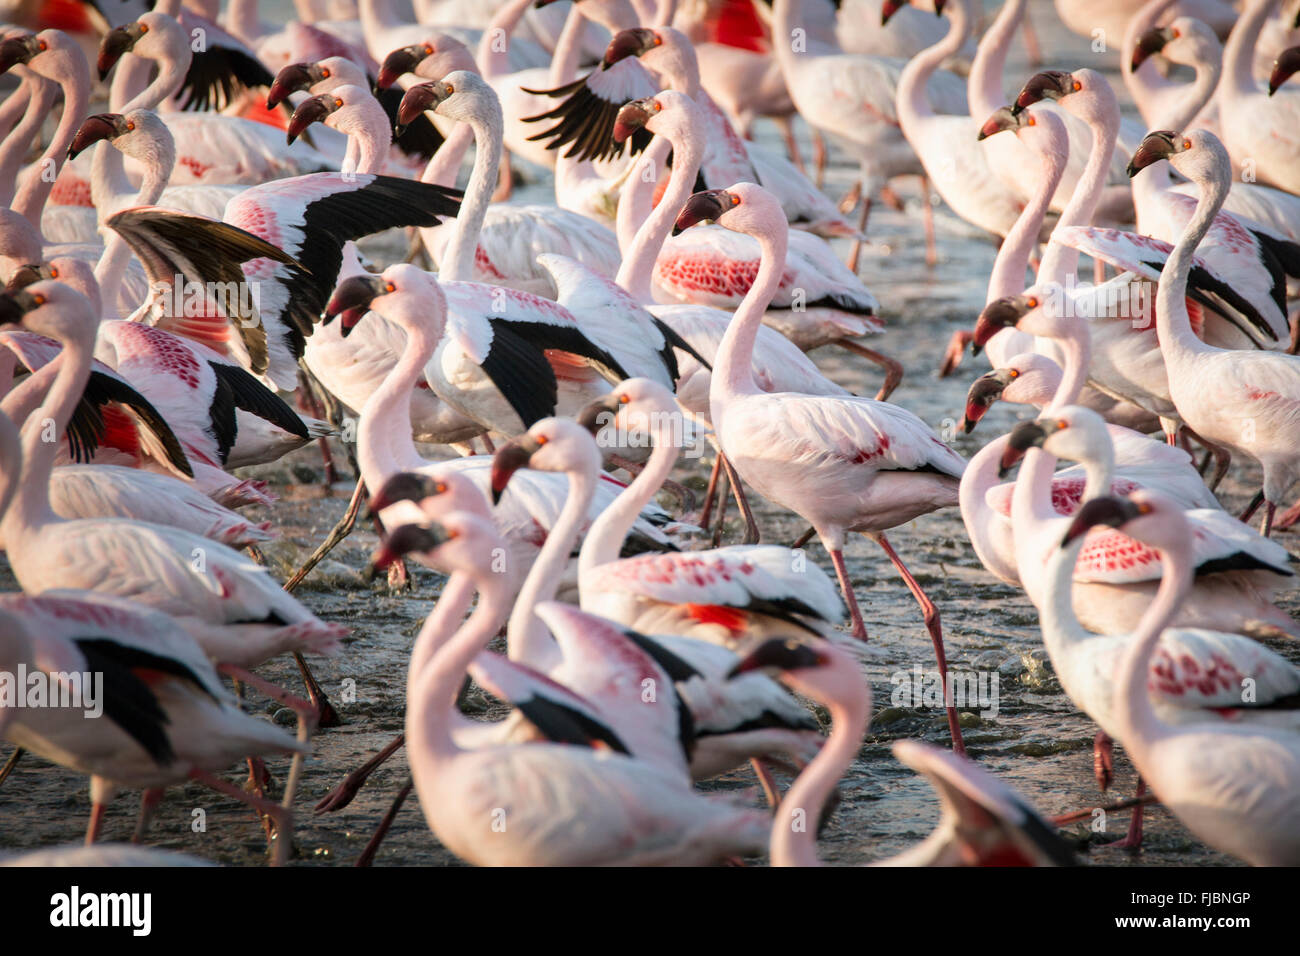 Flamingos at the Walvis Bay wetland Stock Photo